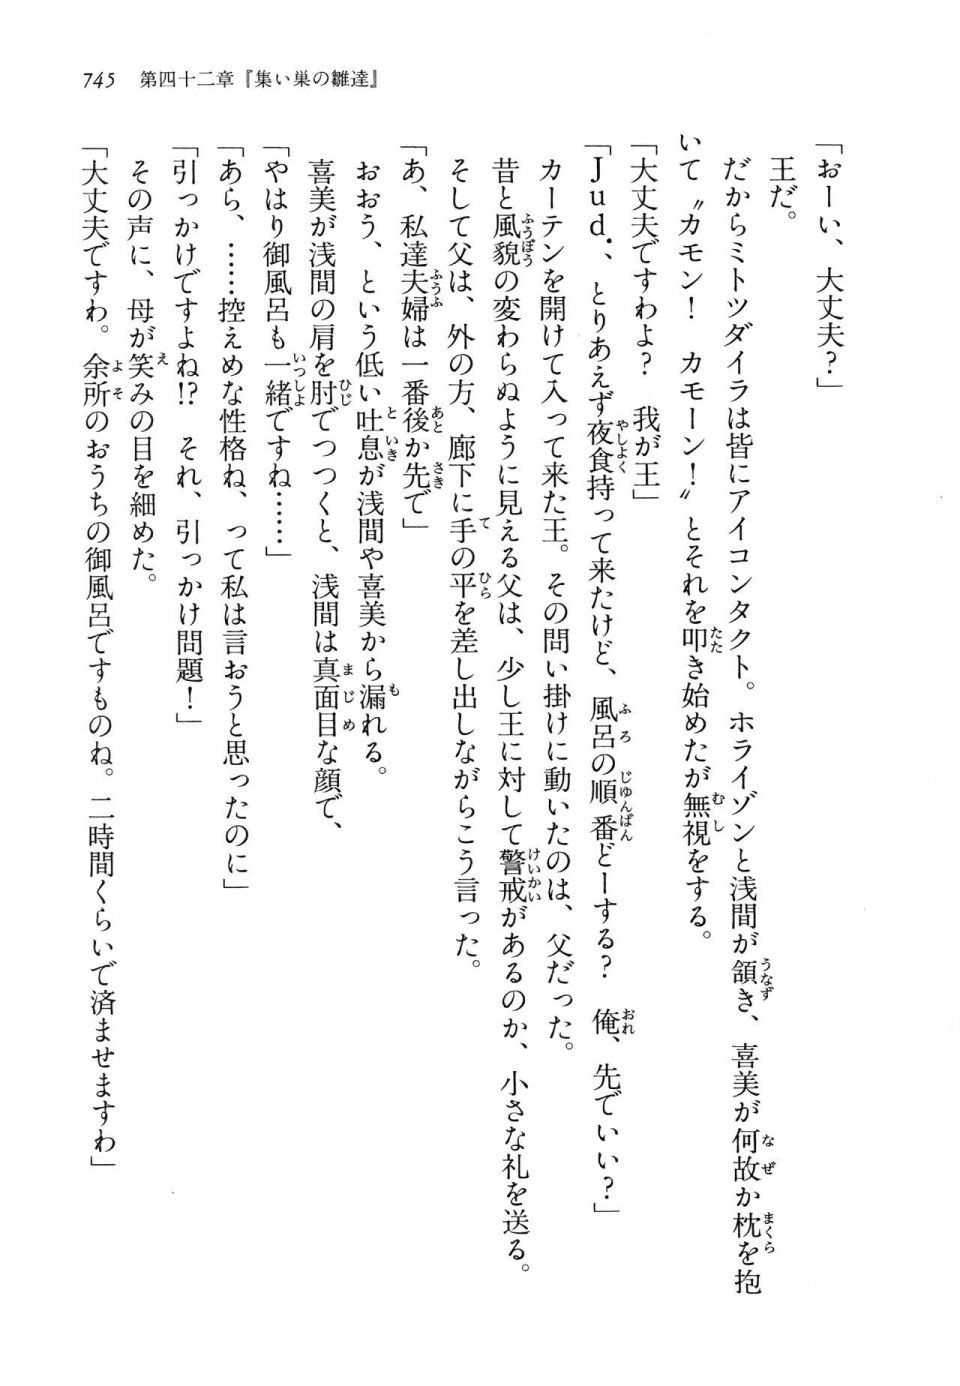 Kyoukai Senjou no Horizon LN Vol 14(6B) - Photo #745